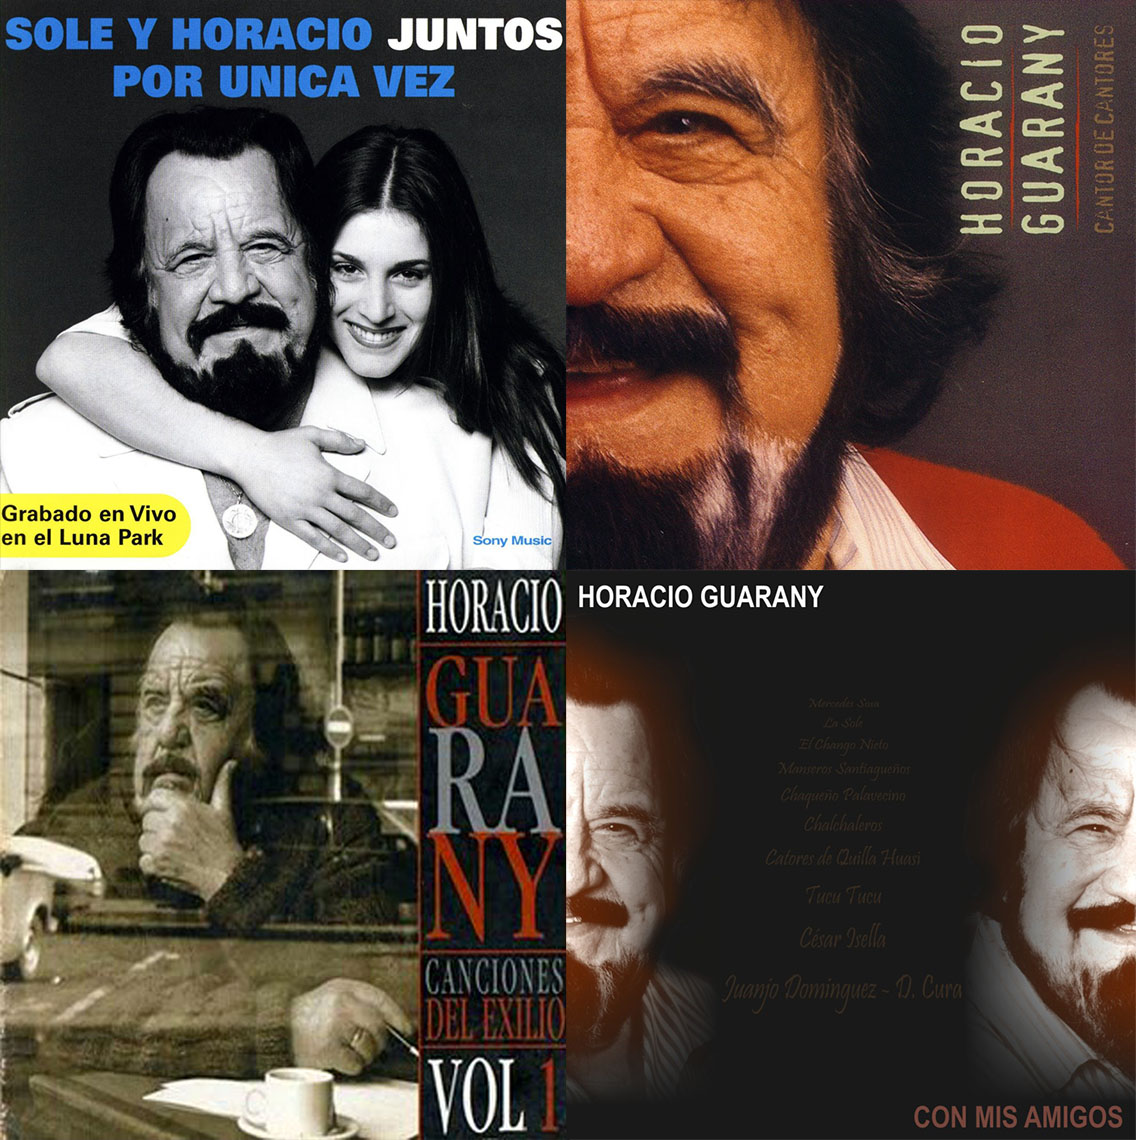 Horacio Guarany (Discografía completa - 83 cd)